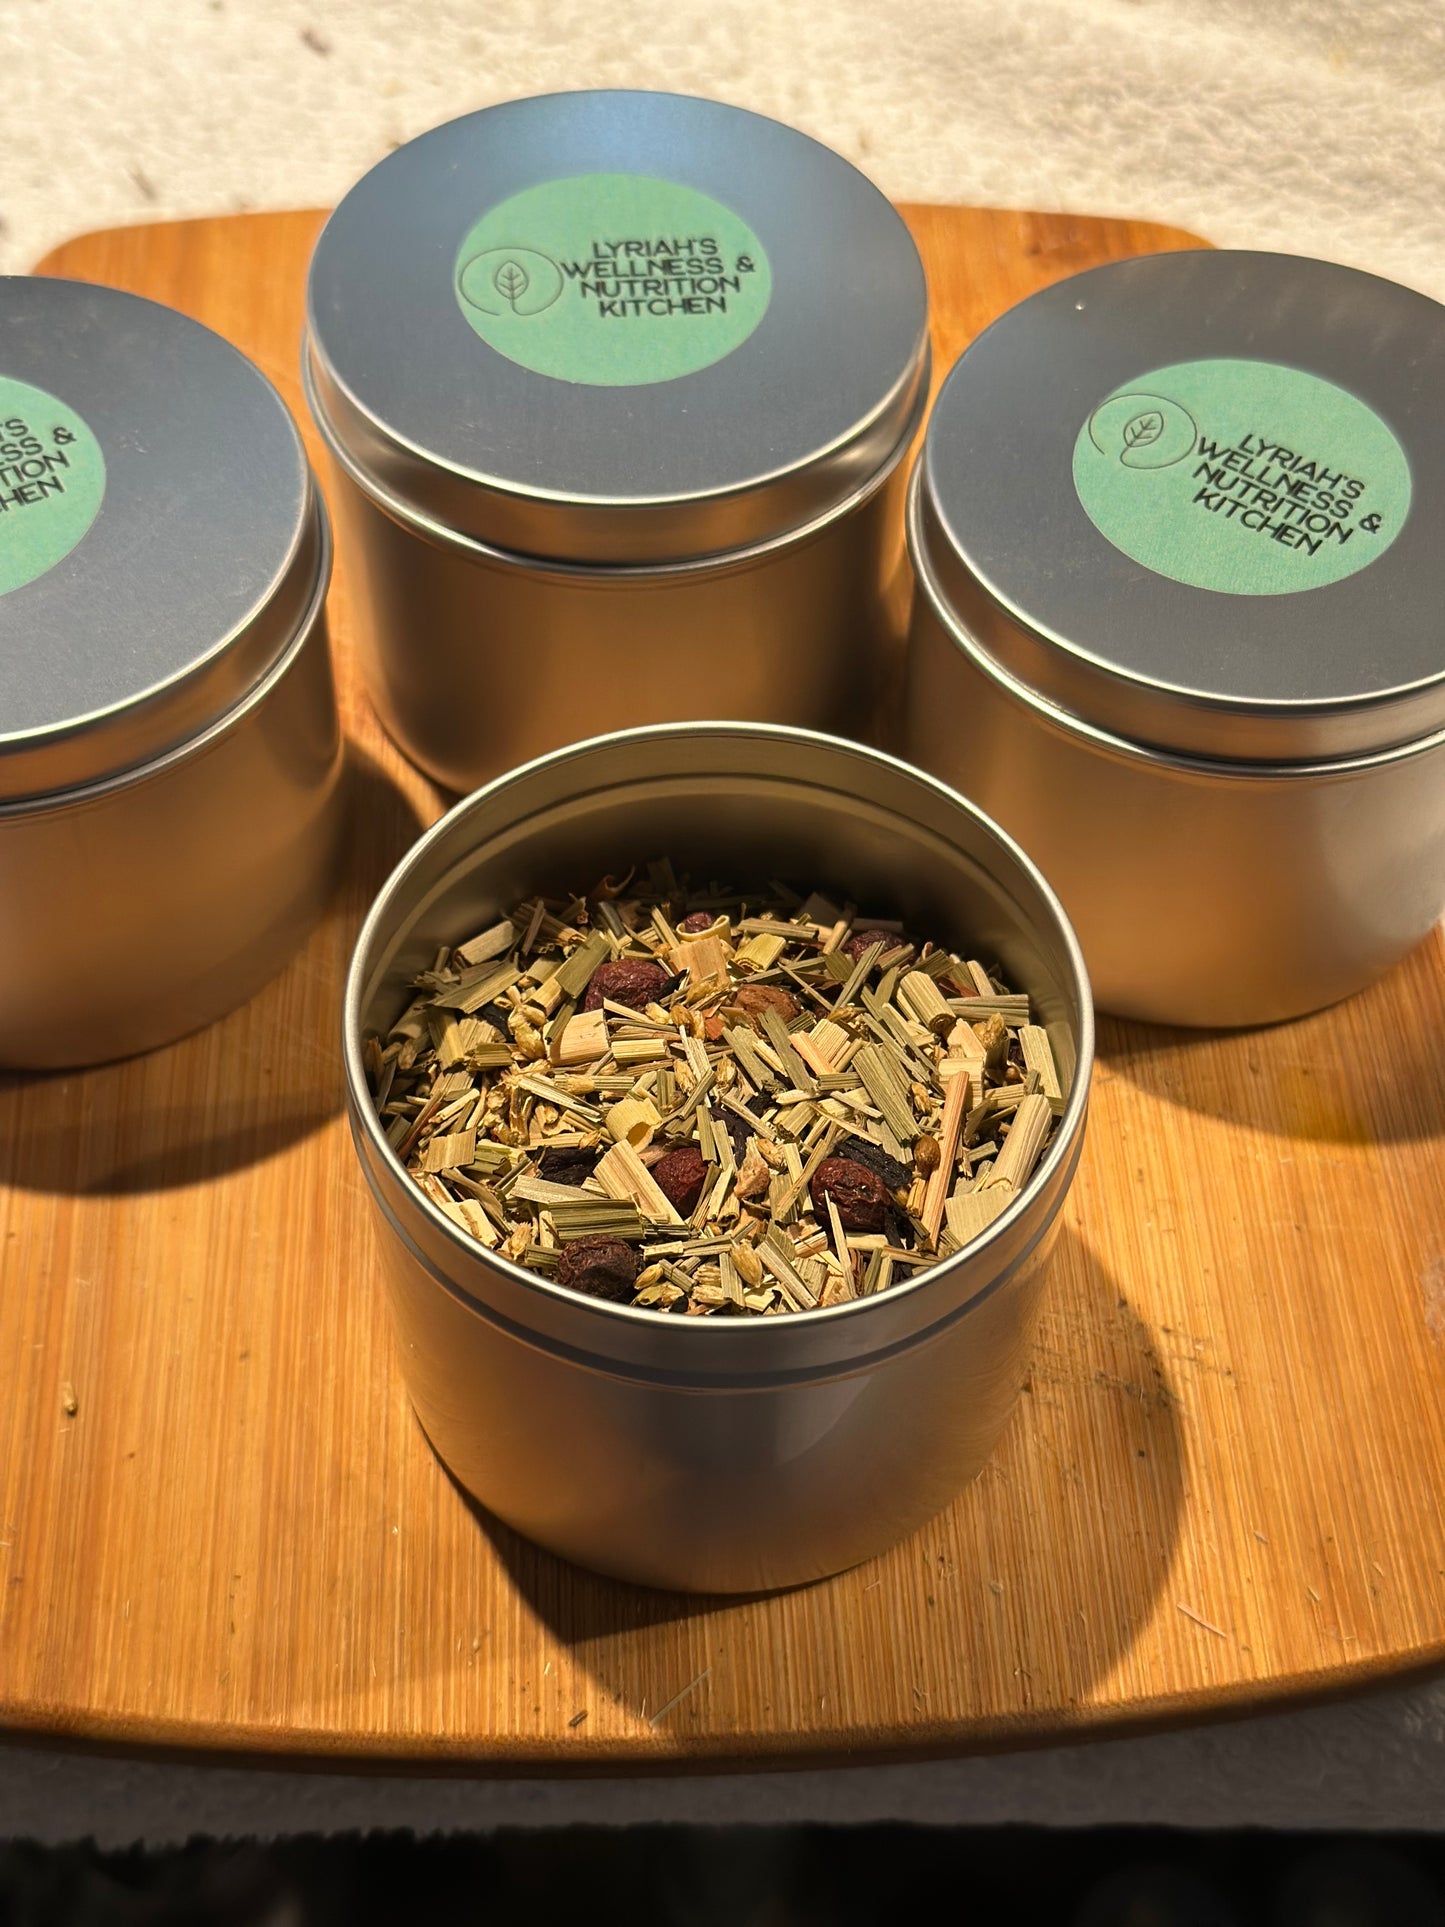 Deep Sleep - Loose Leaf Herbal Tea